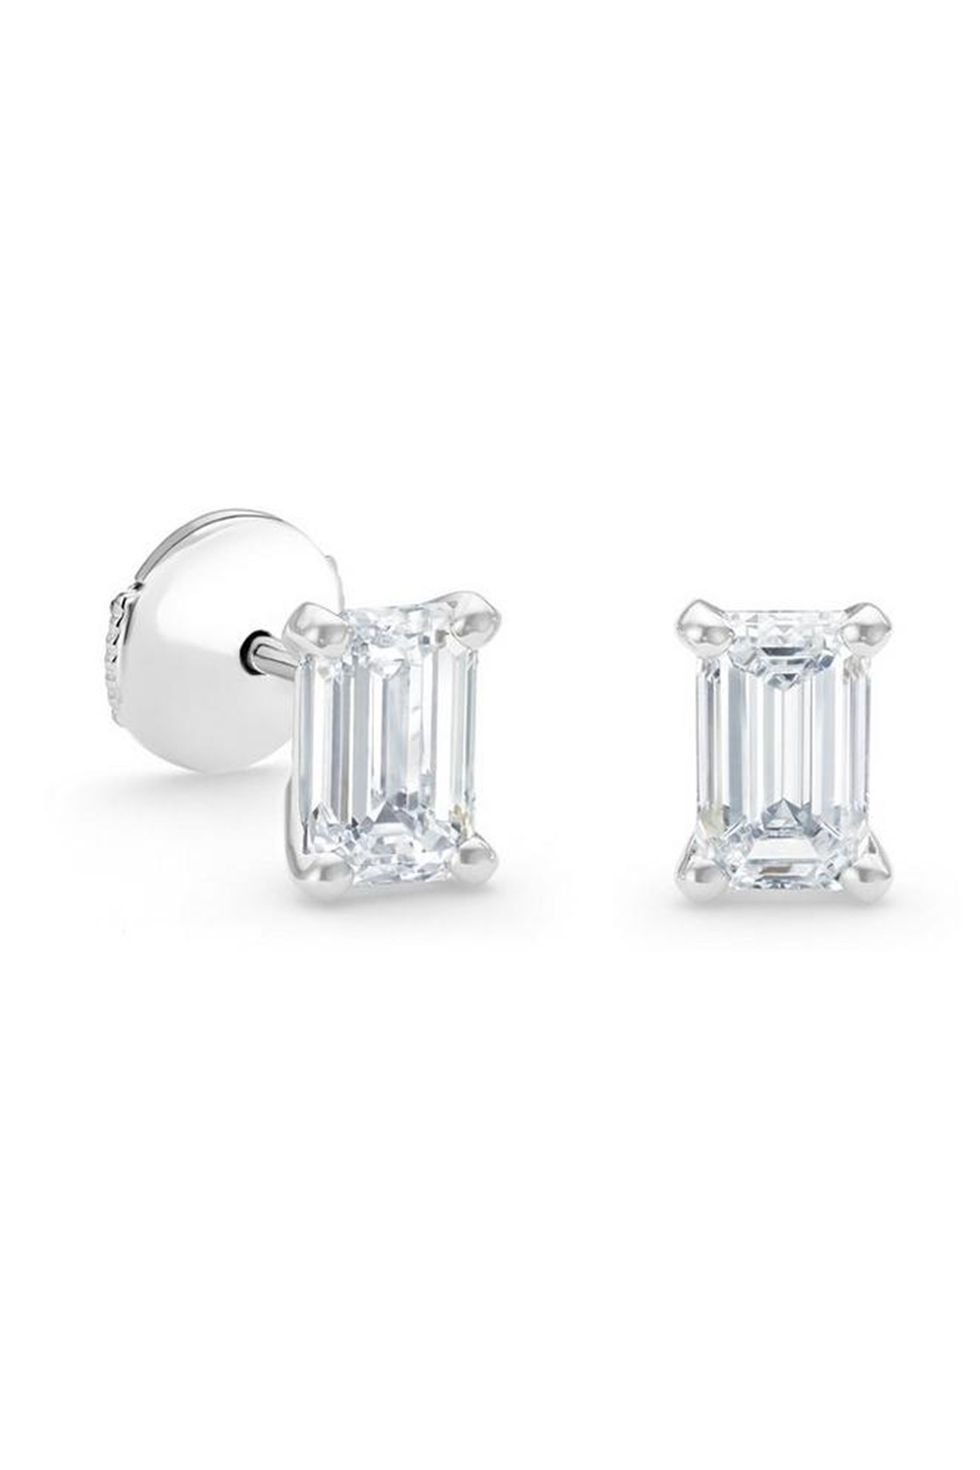 The De Beers Diamond Stud Earrings